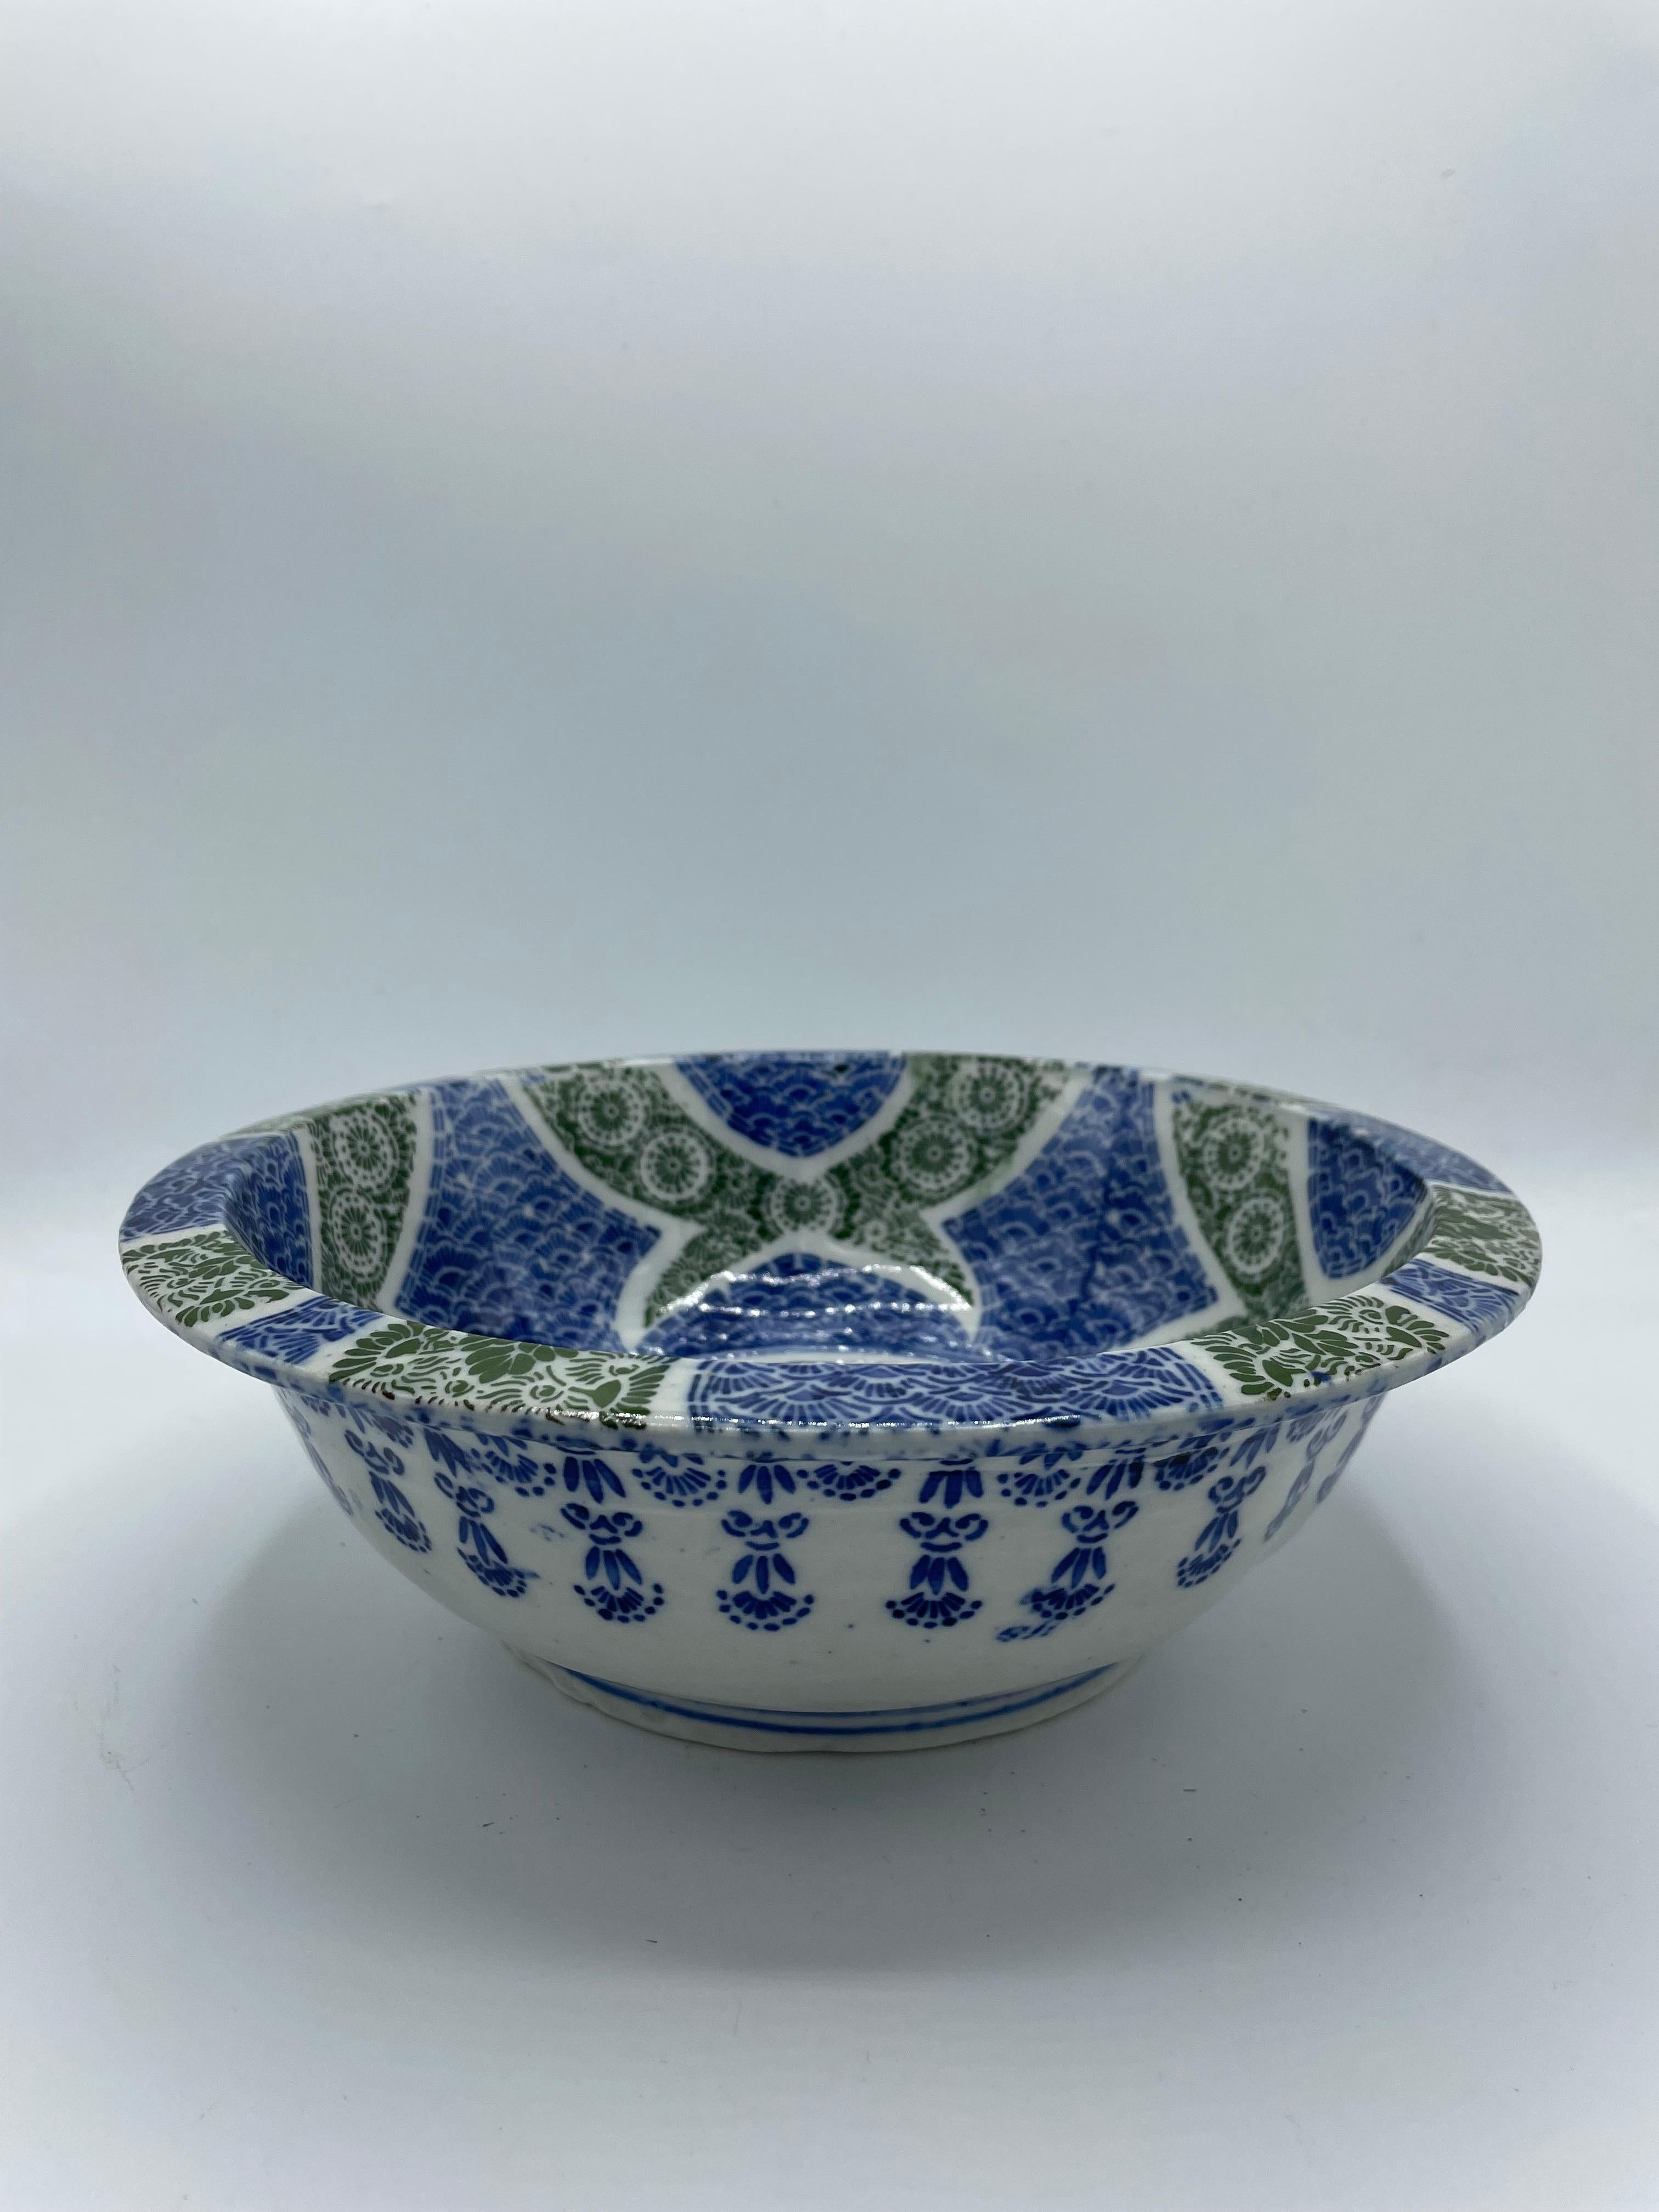 Il s'agit d'un bol de service fabriqué au Japon.
Il a été fabriqué à l'époque Taisho, vers les années 1920. Les couleurs sont le vert, le bleu et le blanc.
Vous pouvez l'utiliser comme bol de service mais aussi comme décoration.

*Dans ce bol, il y